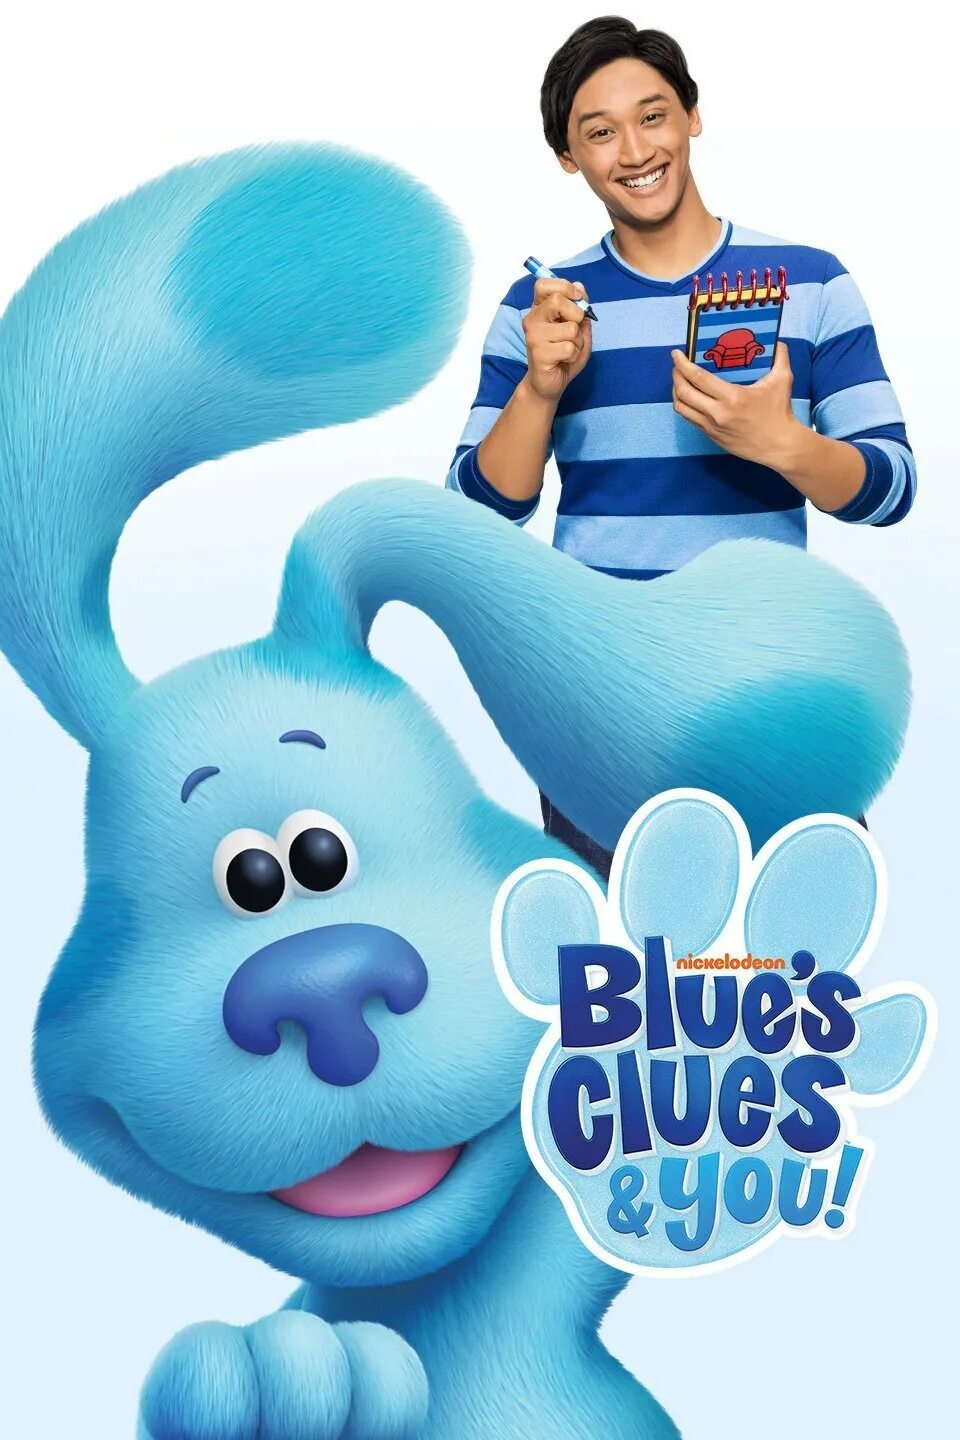 Blue s clues. Подсказки бульки Blue's clues,. Blue s better